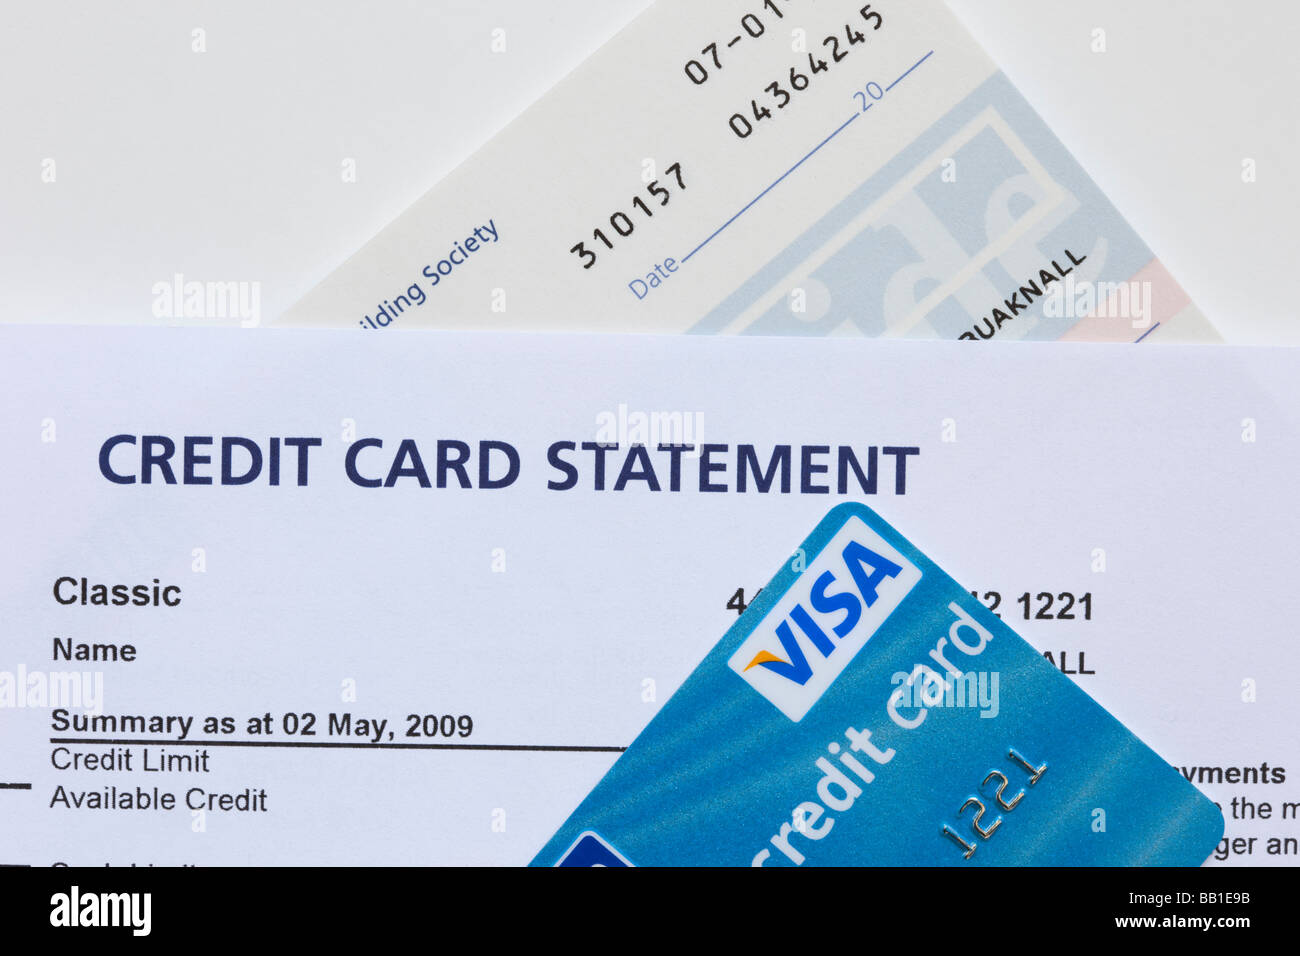 Extracto de la tarjeta de crédito con tarjetas Visa y chequera cerca. Inglaterra Gran Bretaña Foto de stock